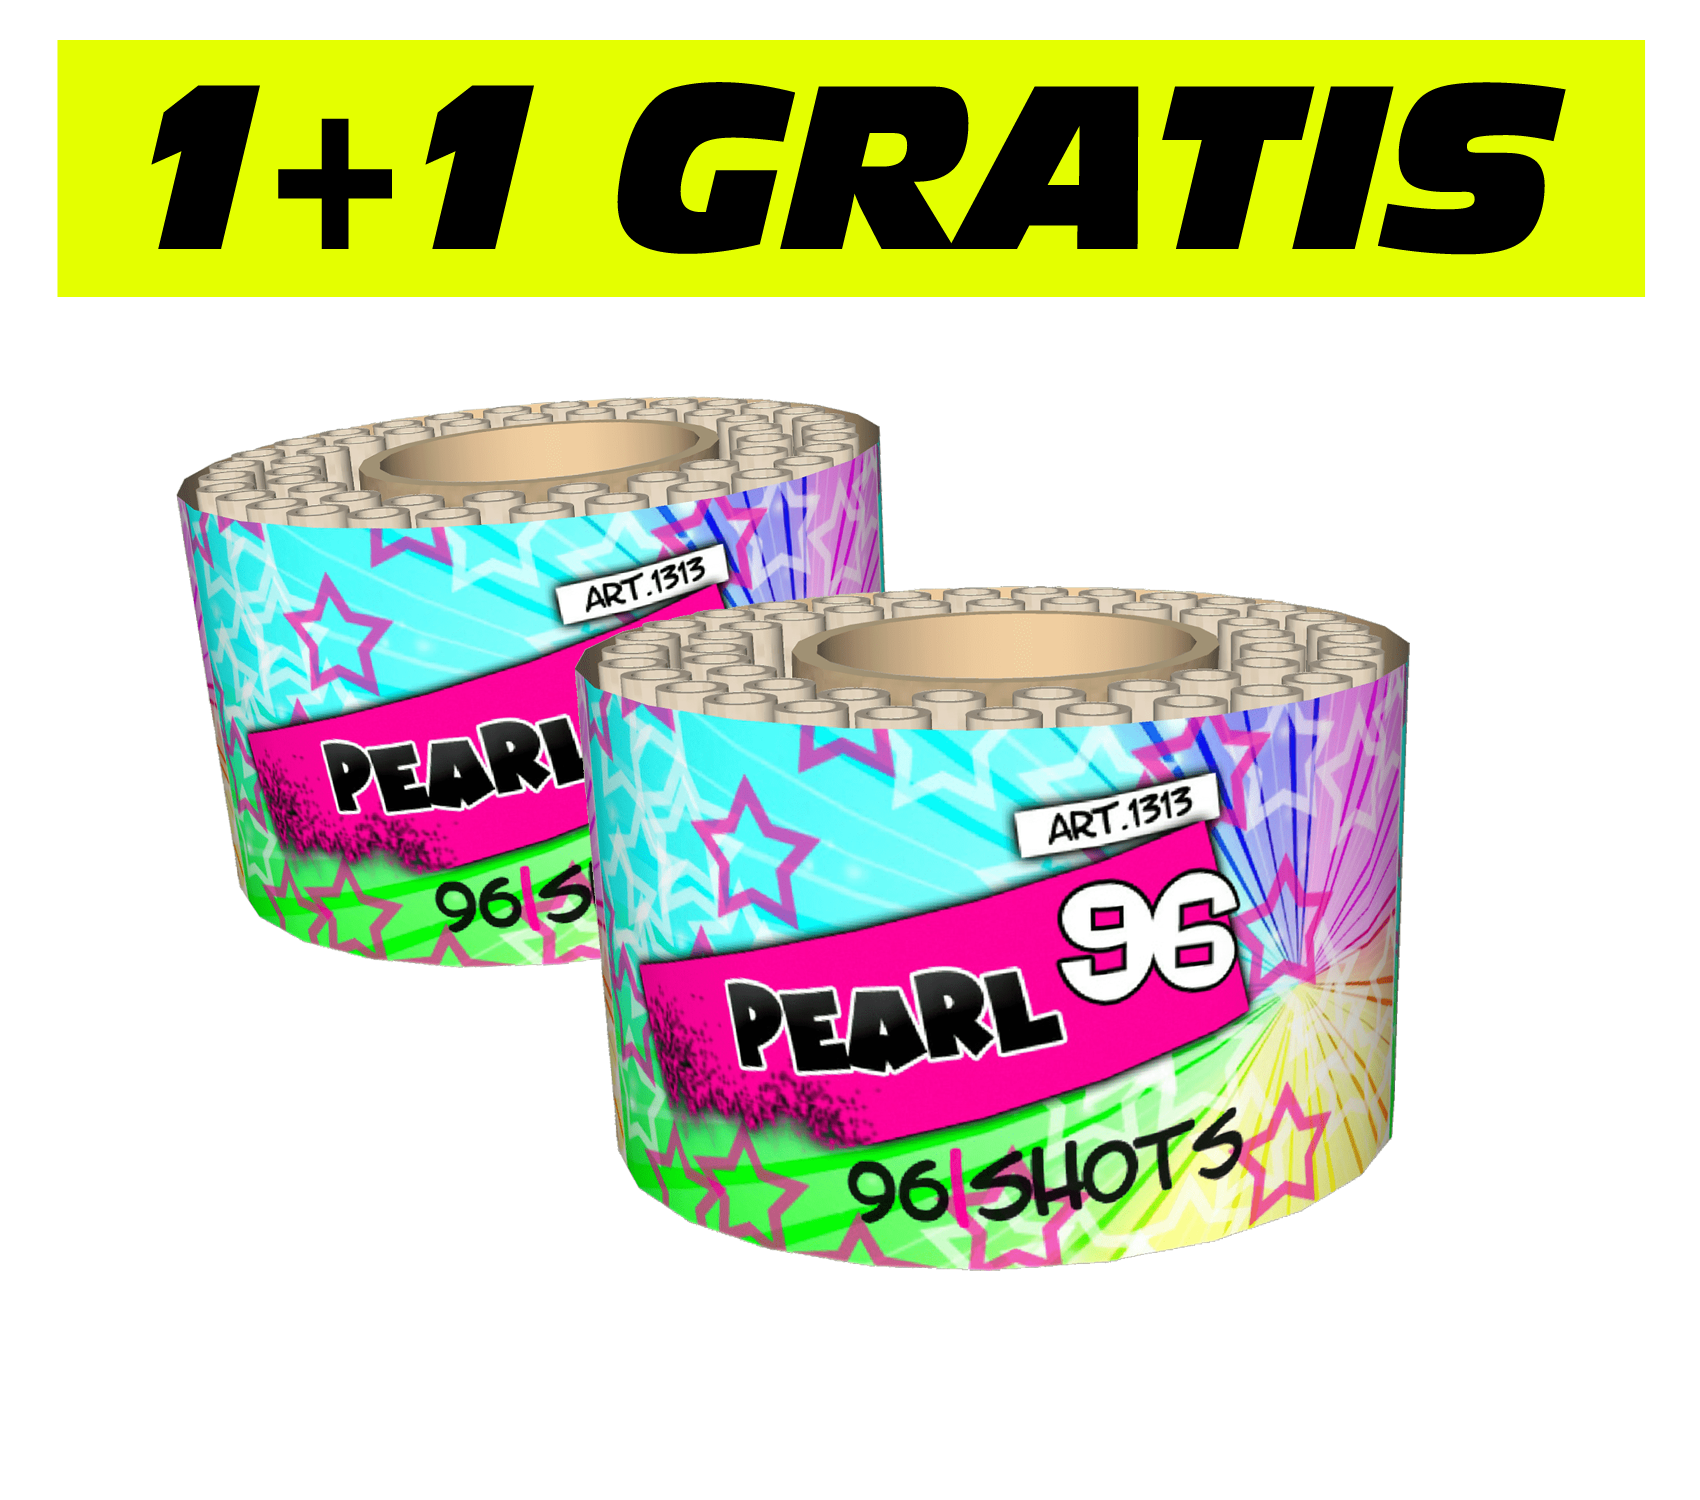 2x Pearl 96 (1+1 GRATIS)